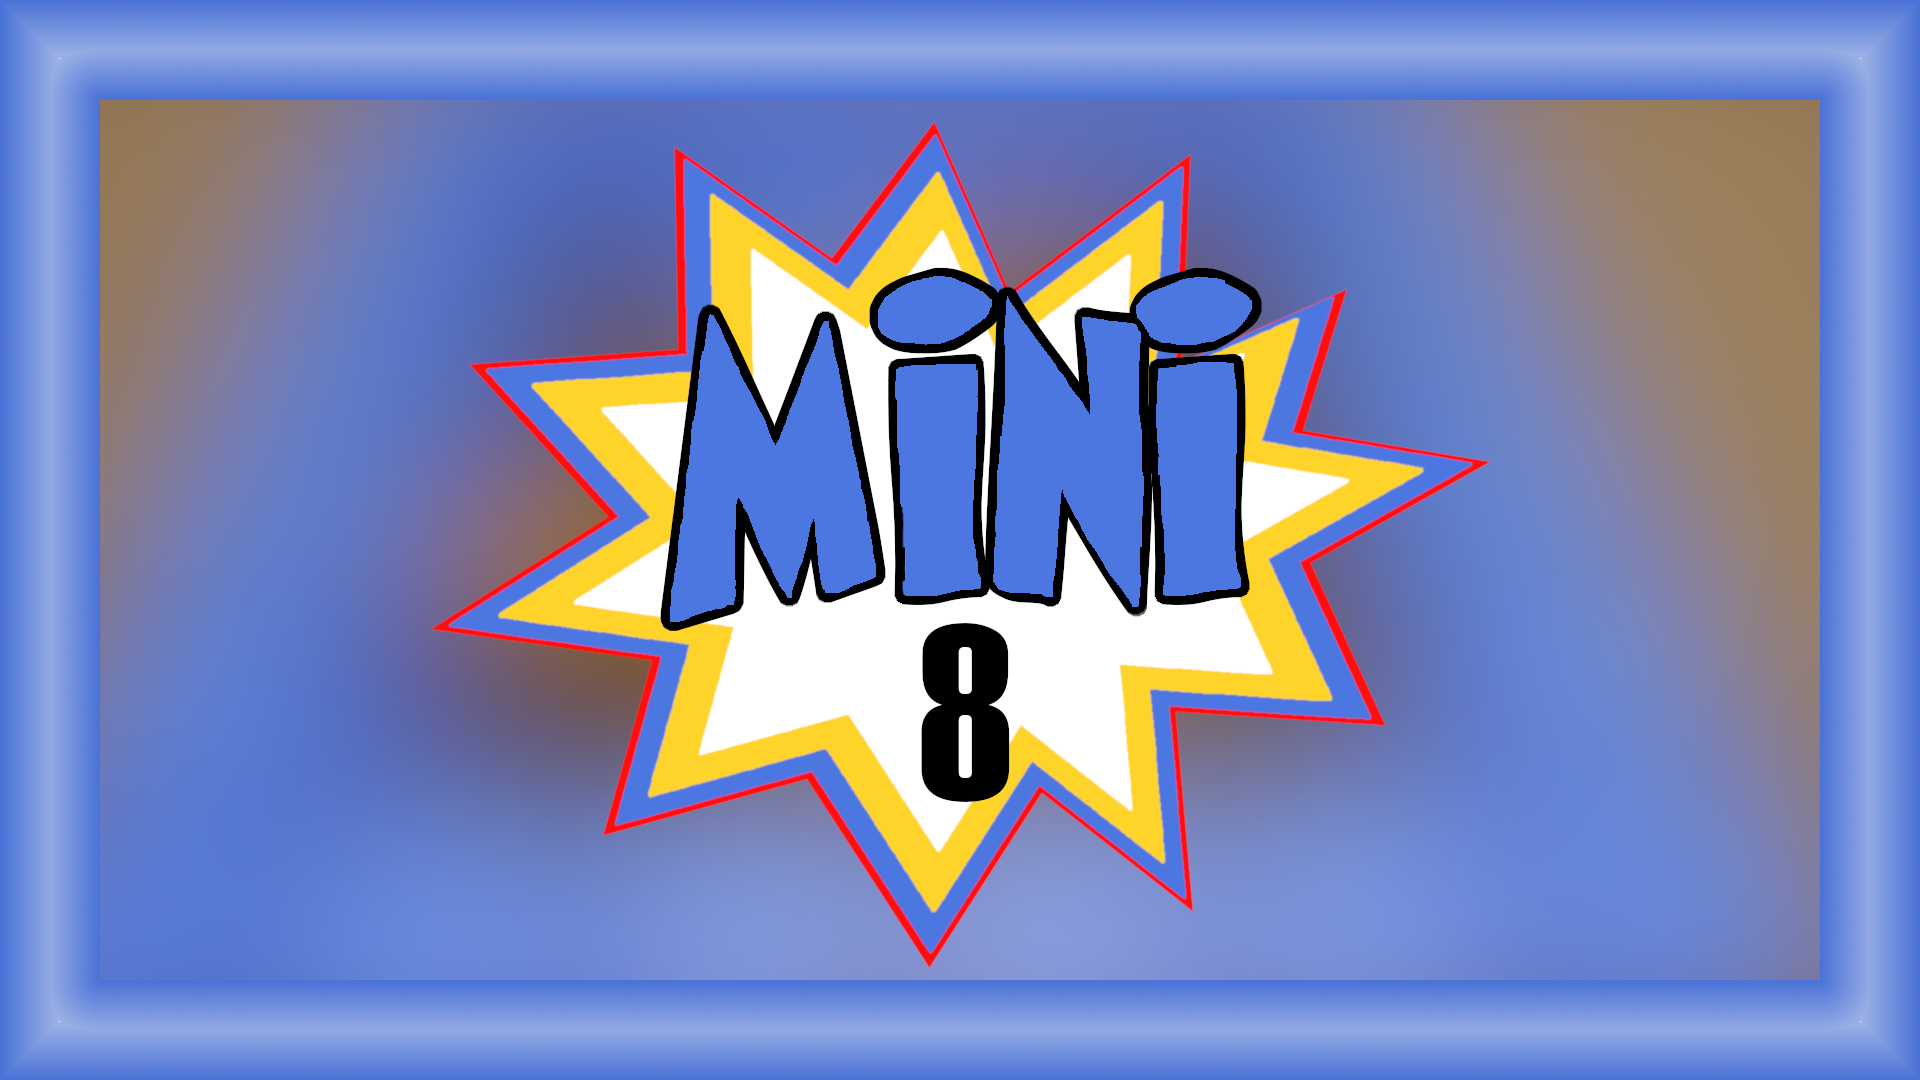 Mini 8